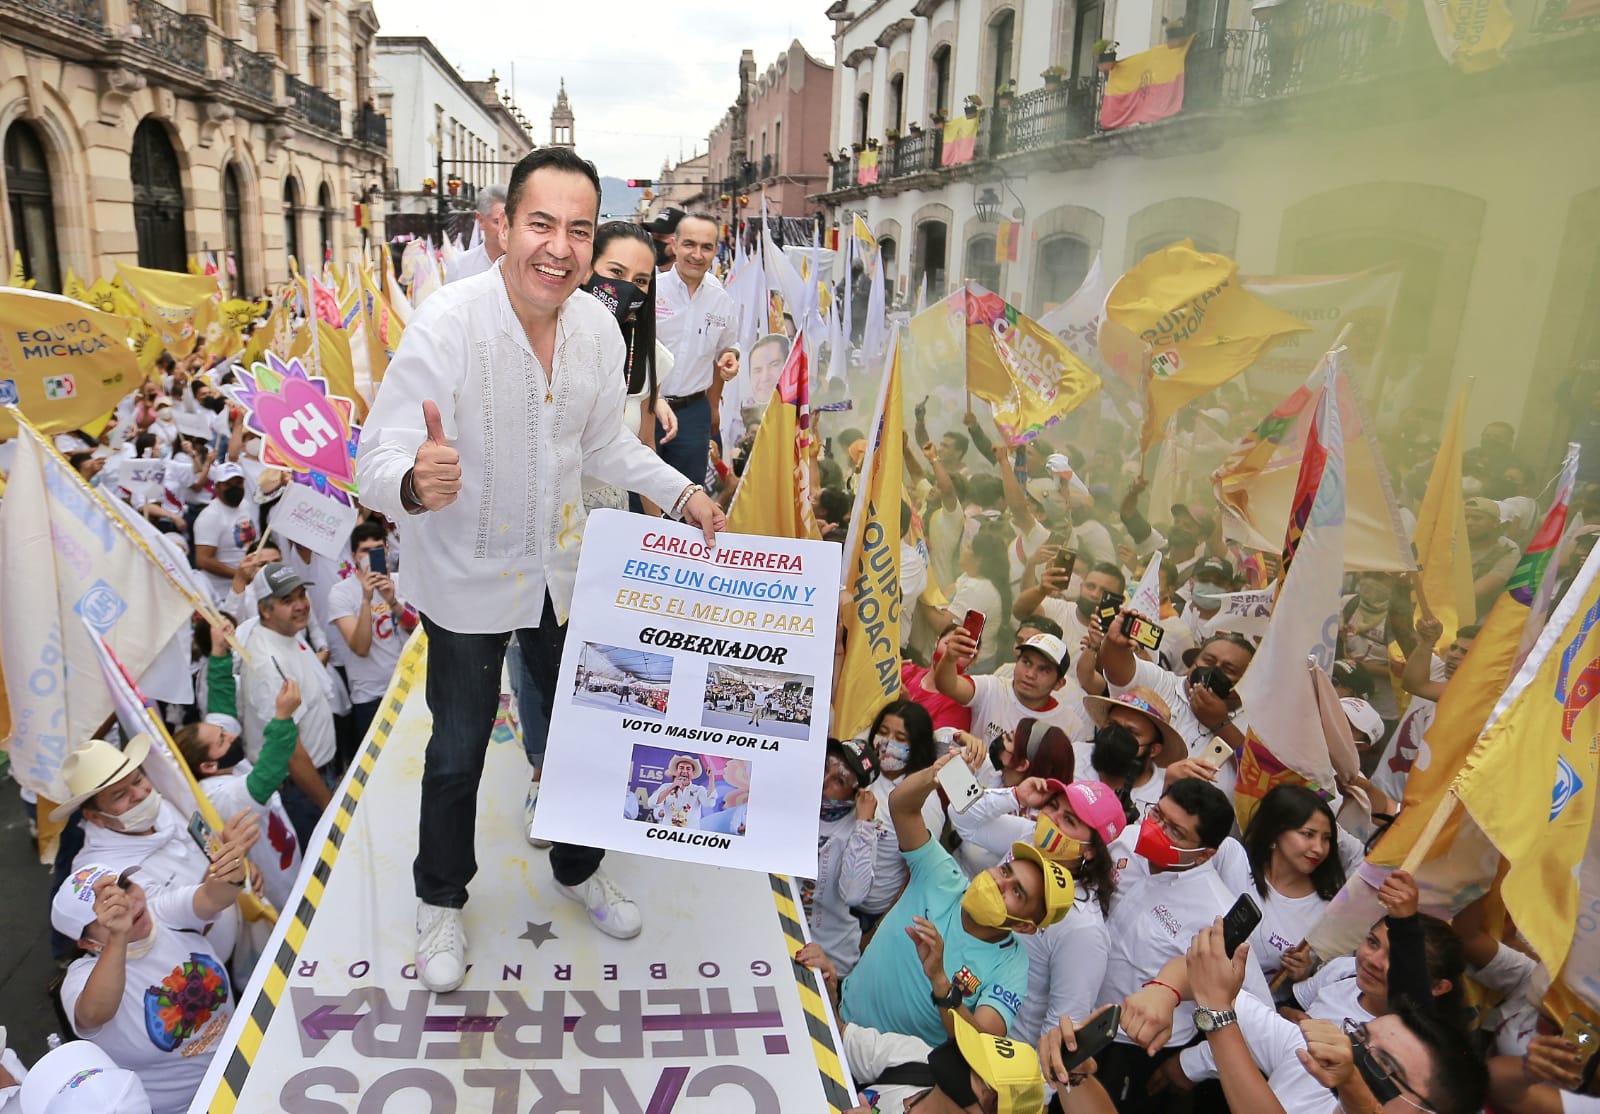 Carlos Herrera cierra campaña electoral en Michoacán